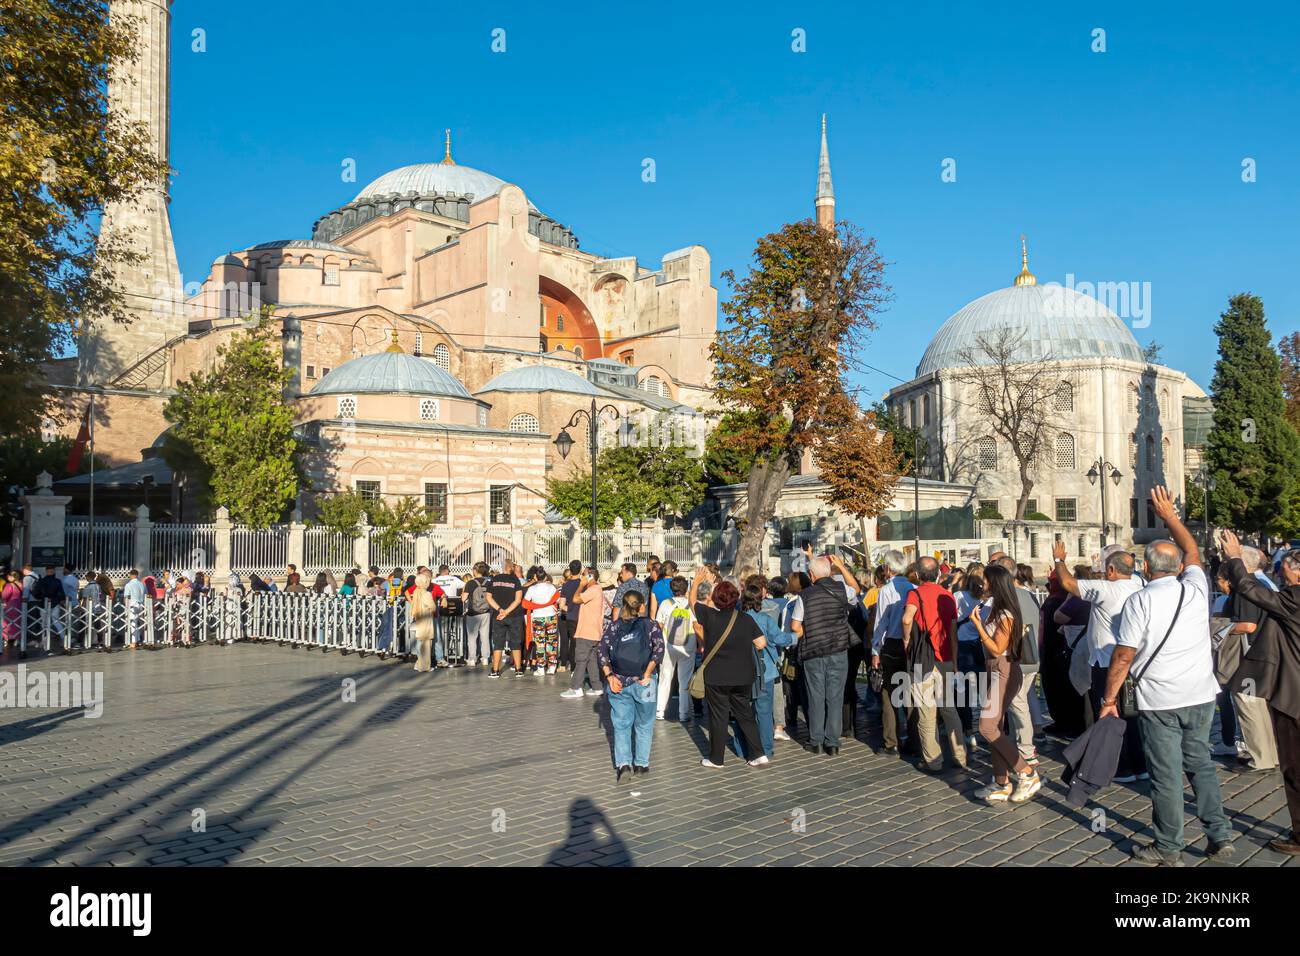 Turisti in coda per entrare nella cattedrale di Hagia Sofia. Fatih, Istanbul, Turchia. Lunga fila per visitare il punto di riferimento di Istanbul - la chiesa / moschea di Sofia. Foto Stock